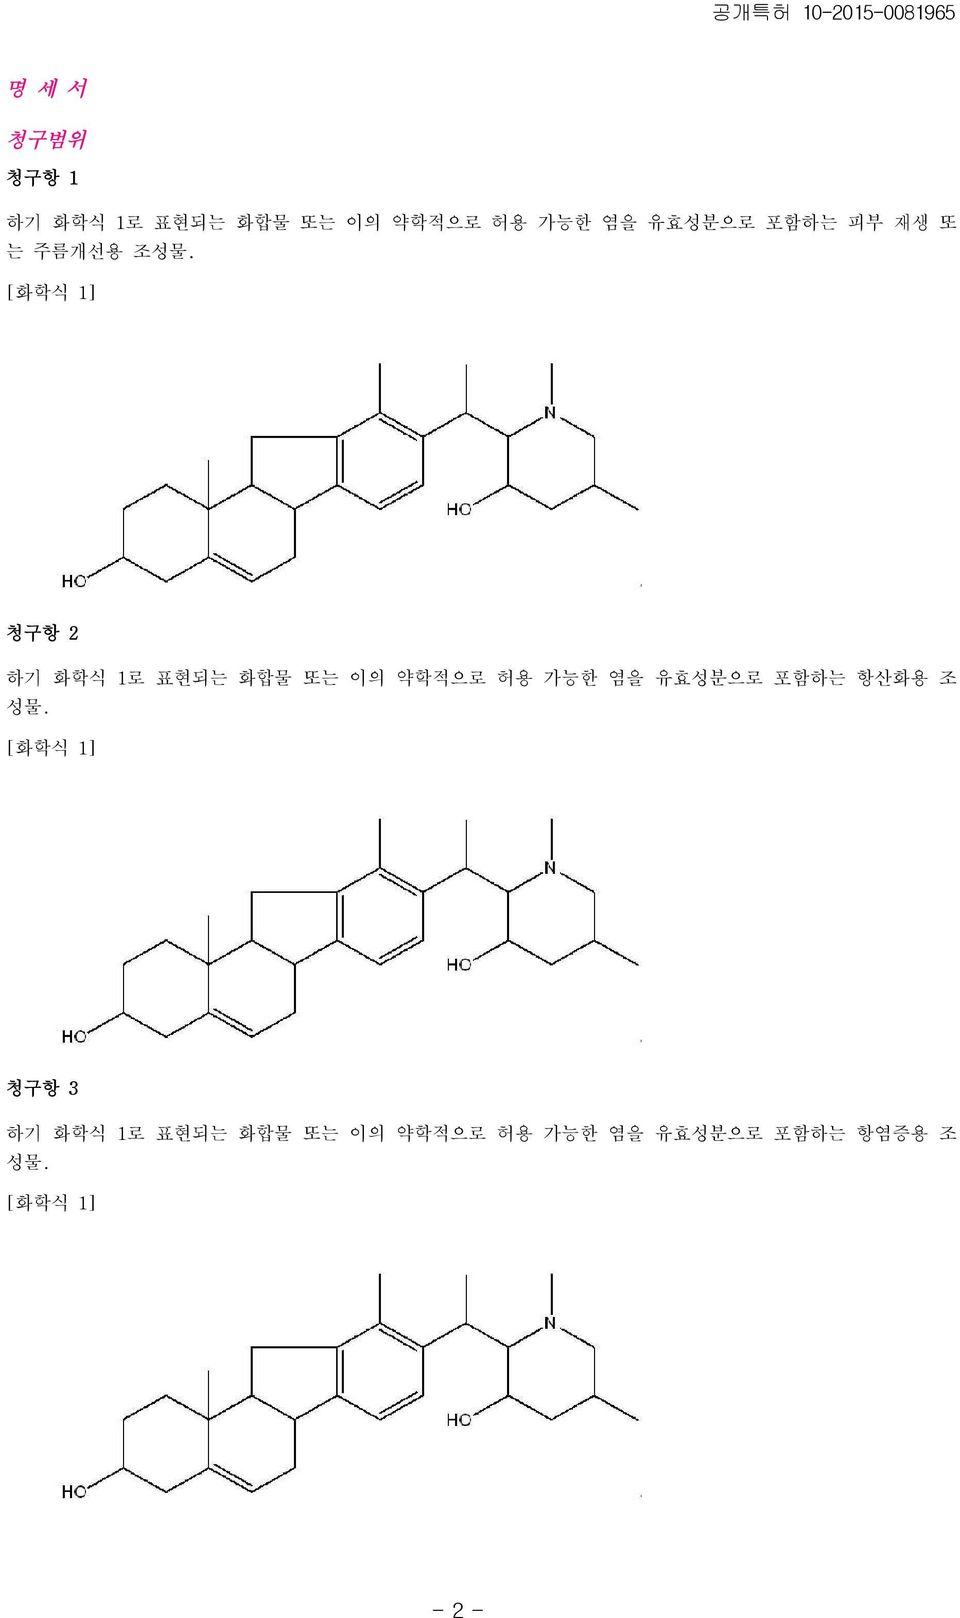 [화학식 1] 청구항 2 하기 화학식 1로 표현되는 화합물 또는 이의 약학적으로 허용 가능한 염을 유효성분으로